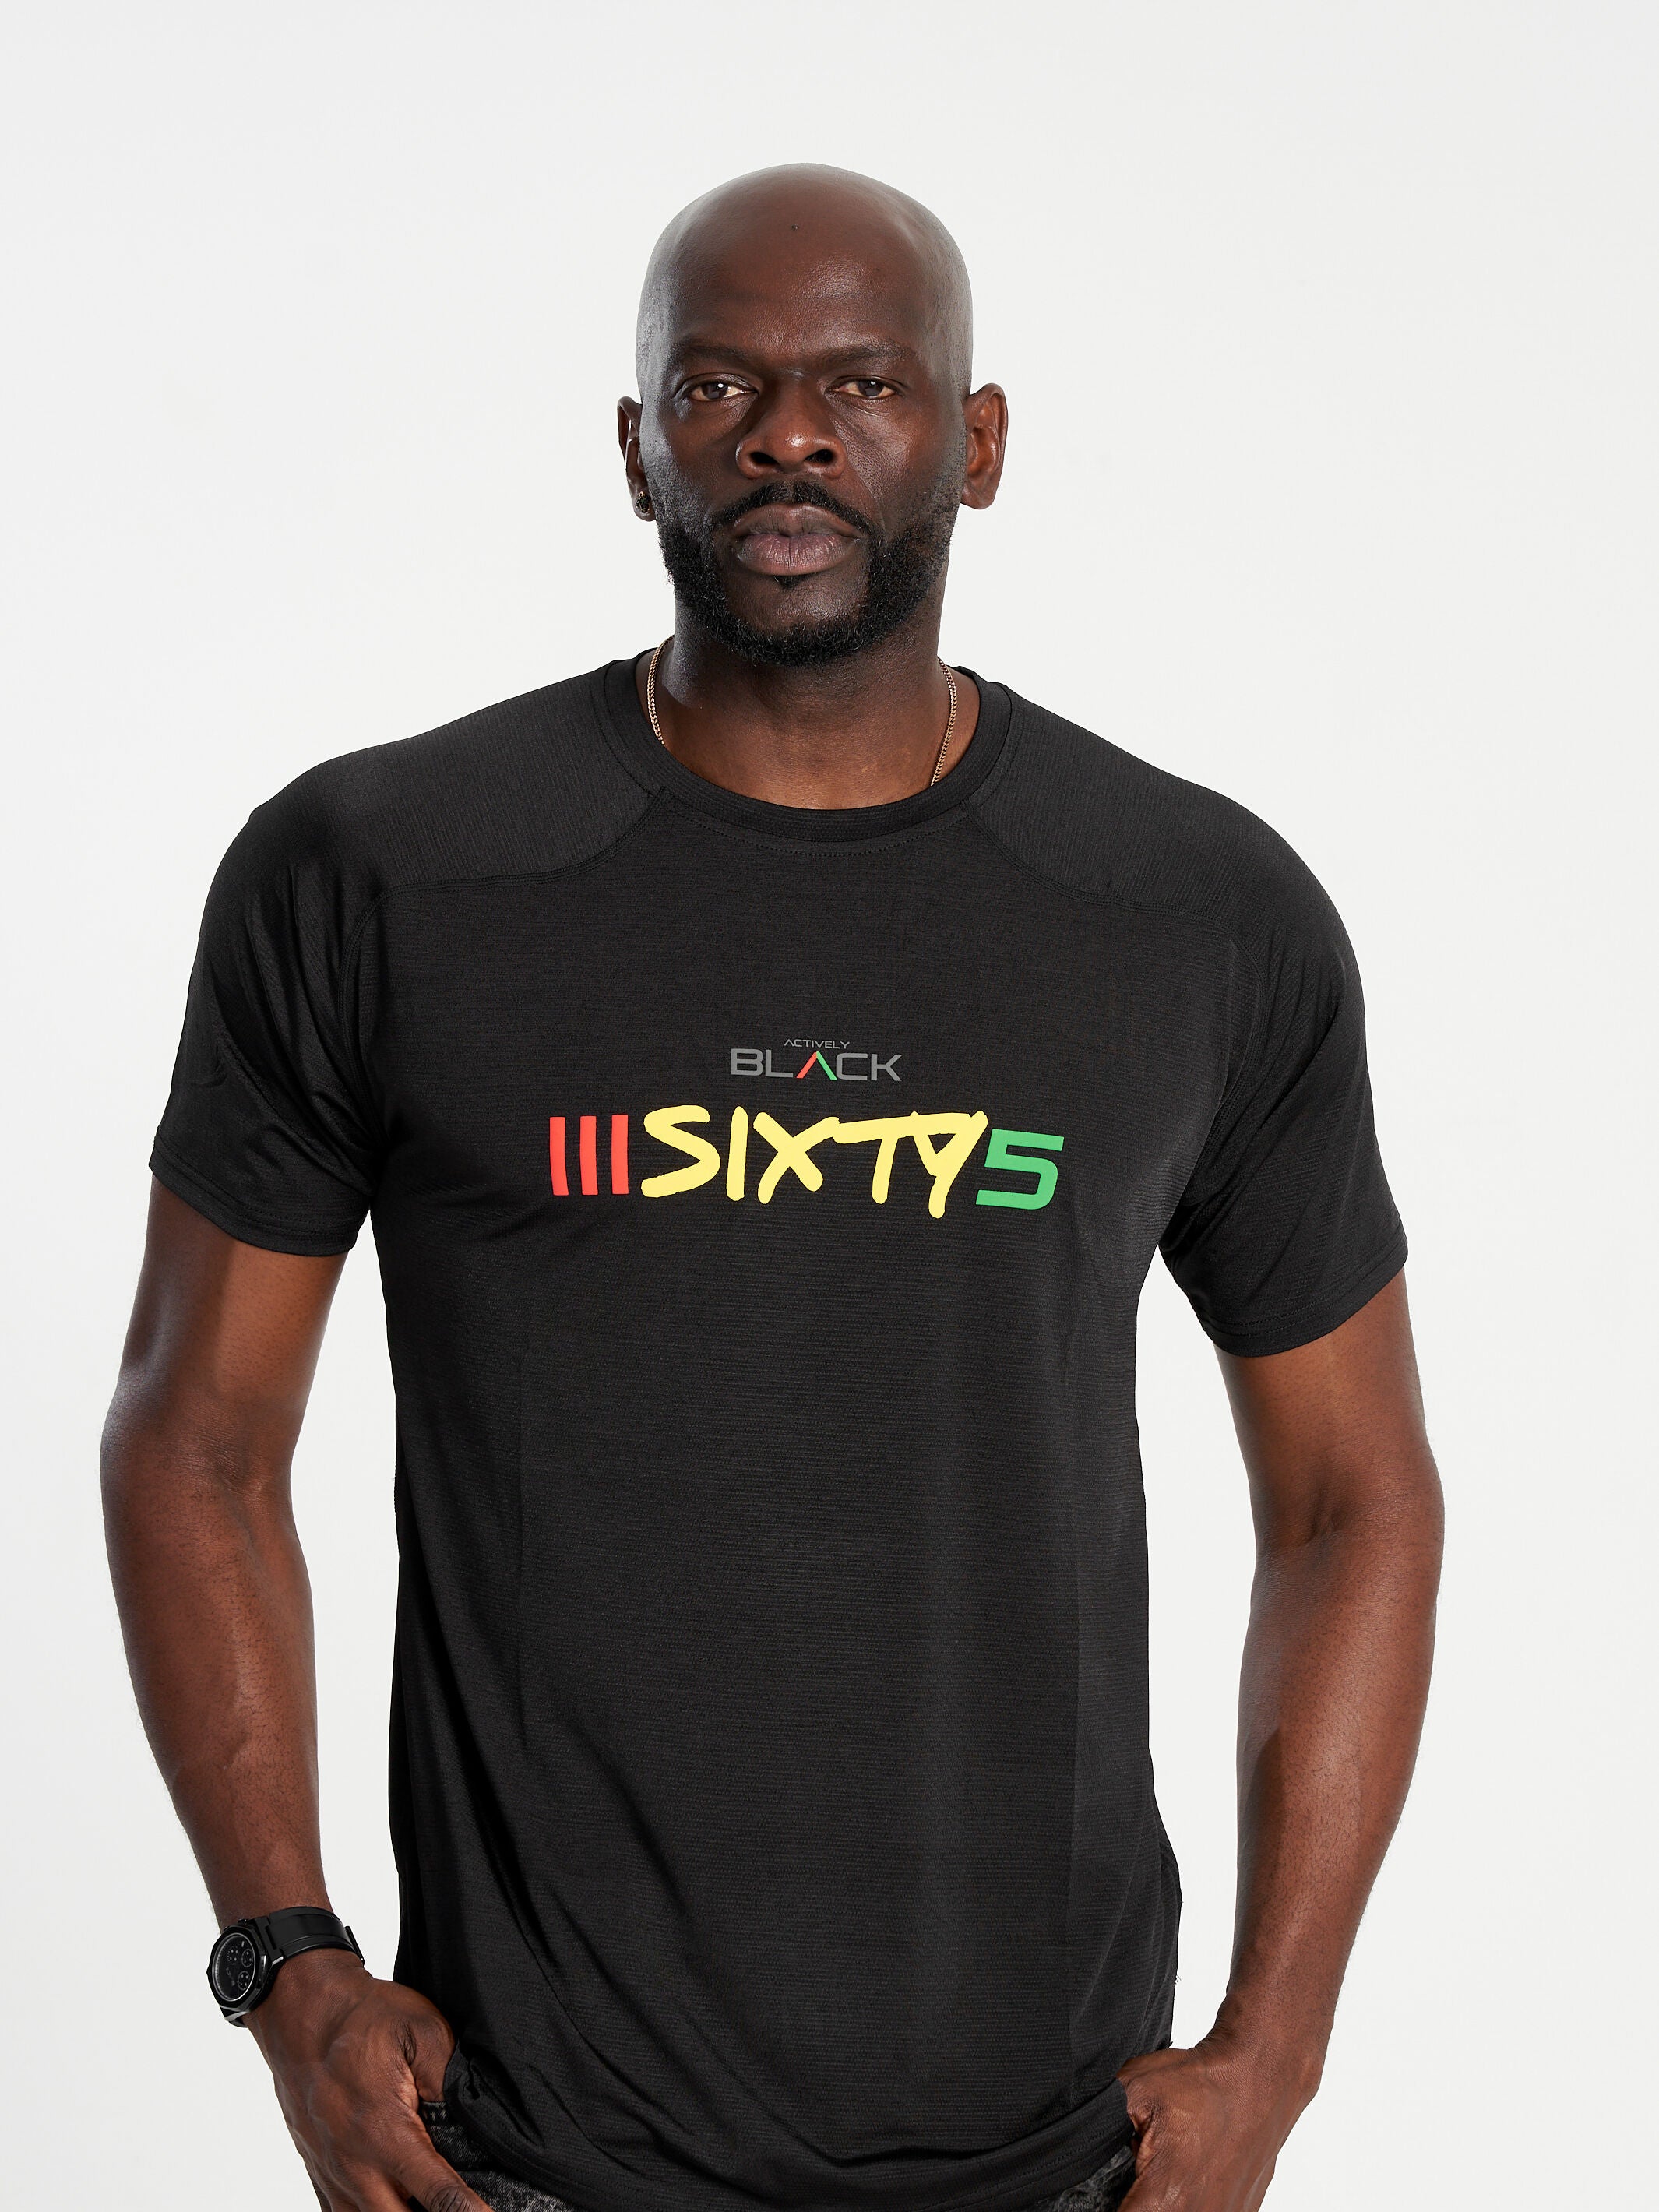 Unisex Actively Black 365 Performance Shirt